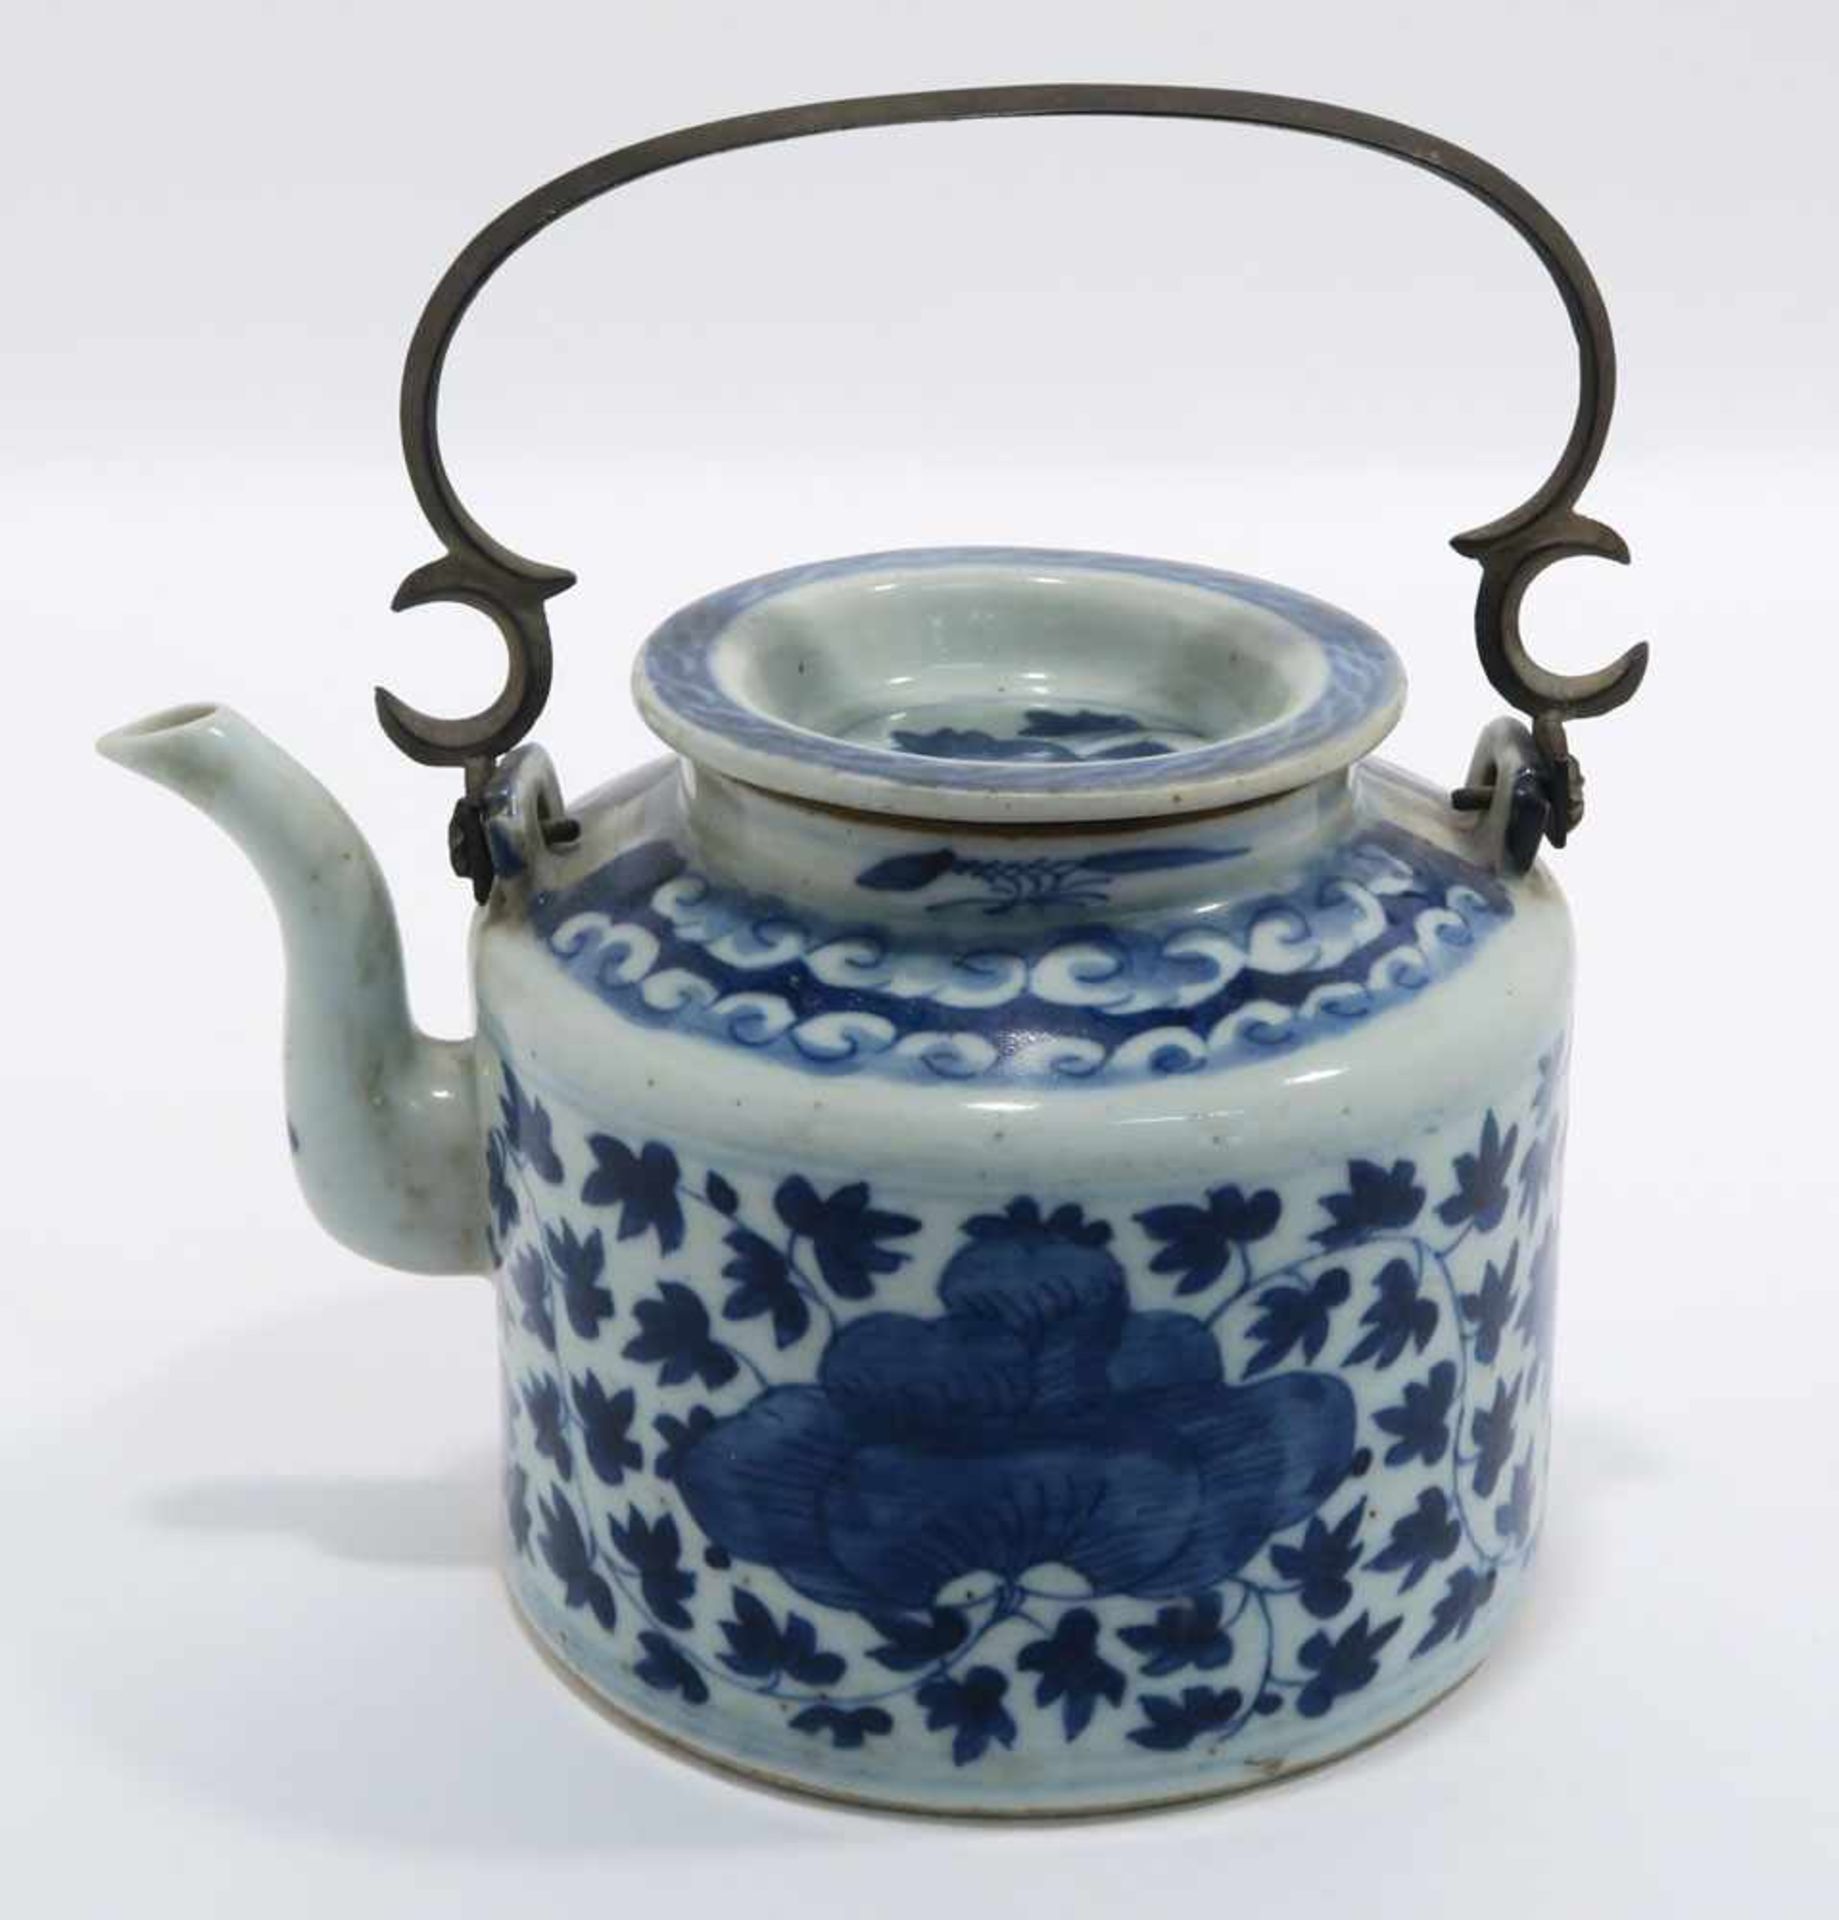 Zwei TeekannenChina. Porzellan. Floraler bzw. figürlicher Blaudekor. Metallhenkel. H. 11,5 cm bzw. - Bild 3 aus 15